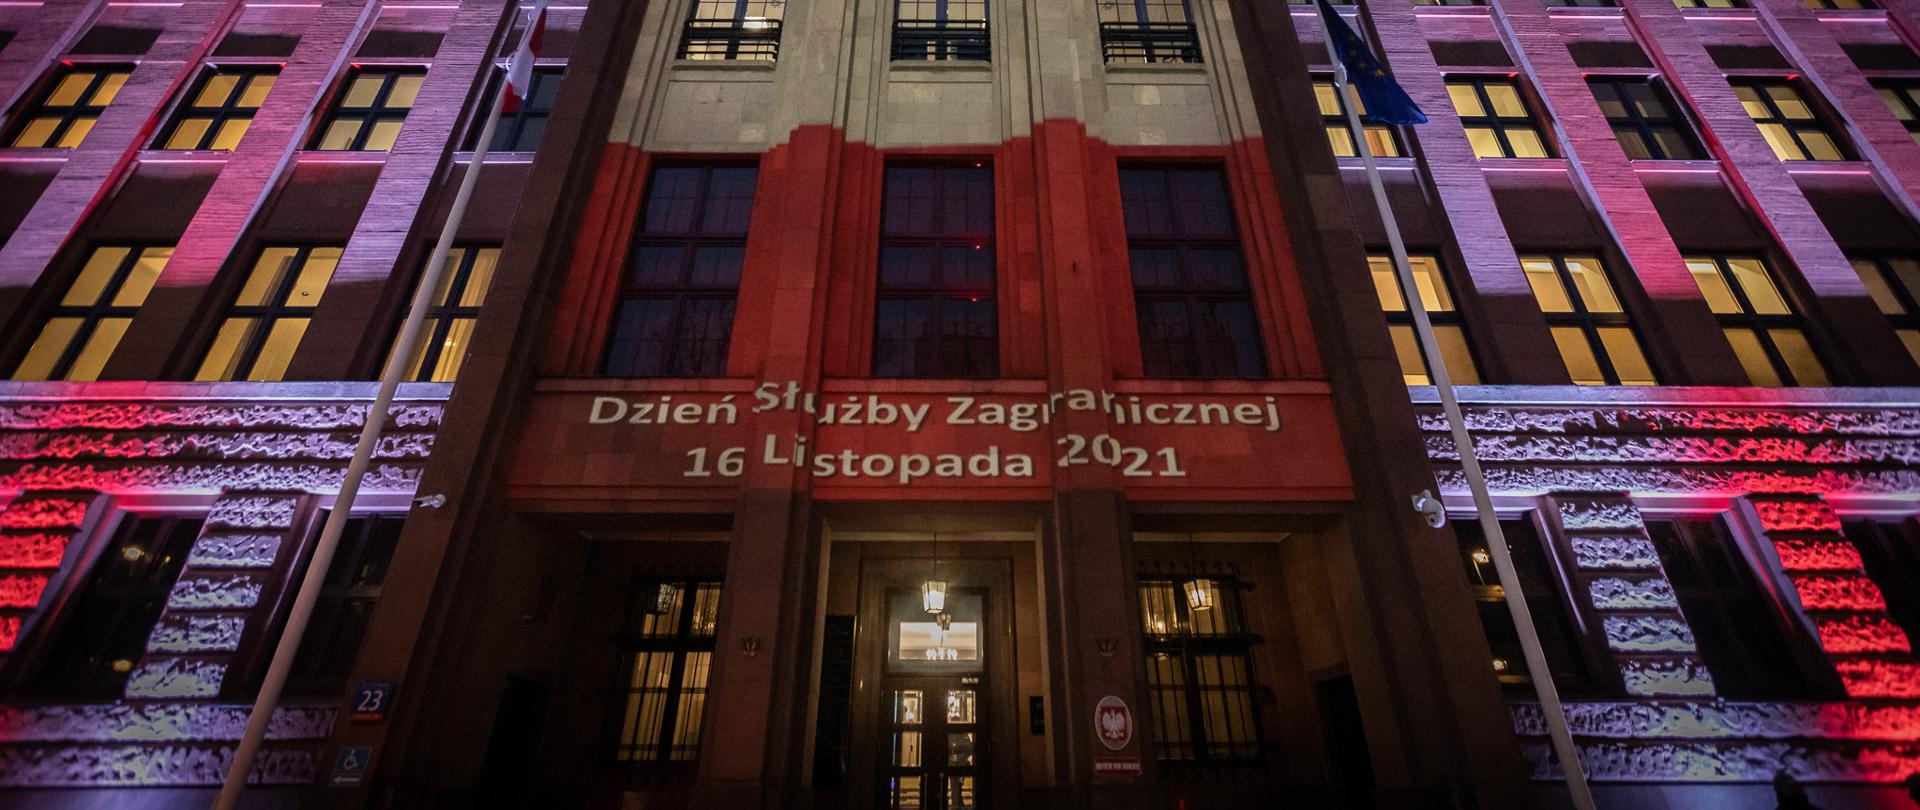 2021.11.16 Warszawa . Budynek MSZ , podswietlony gmach na DSZ .
Fot. Tymon Markowski / MSZ